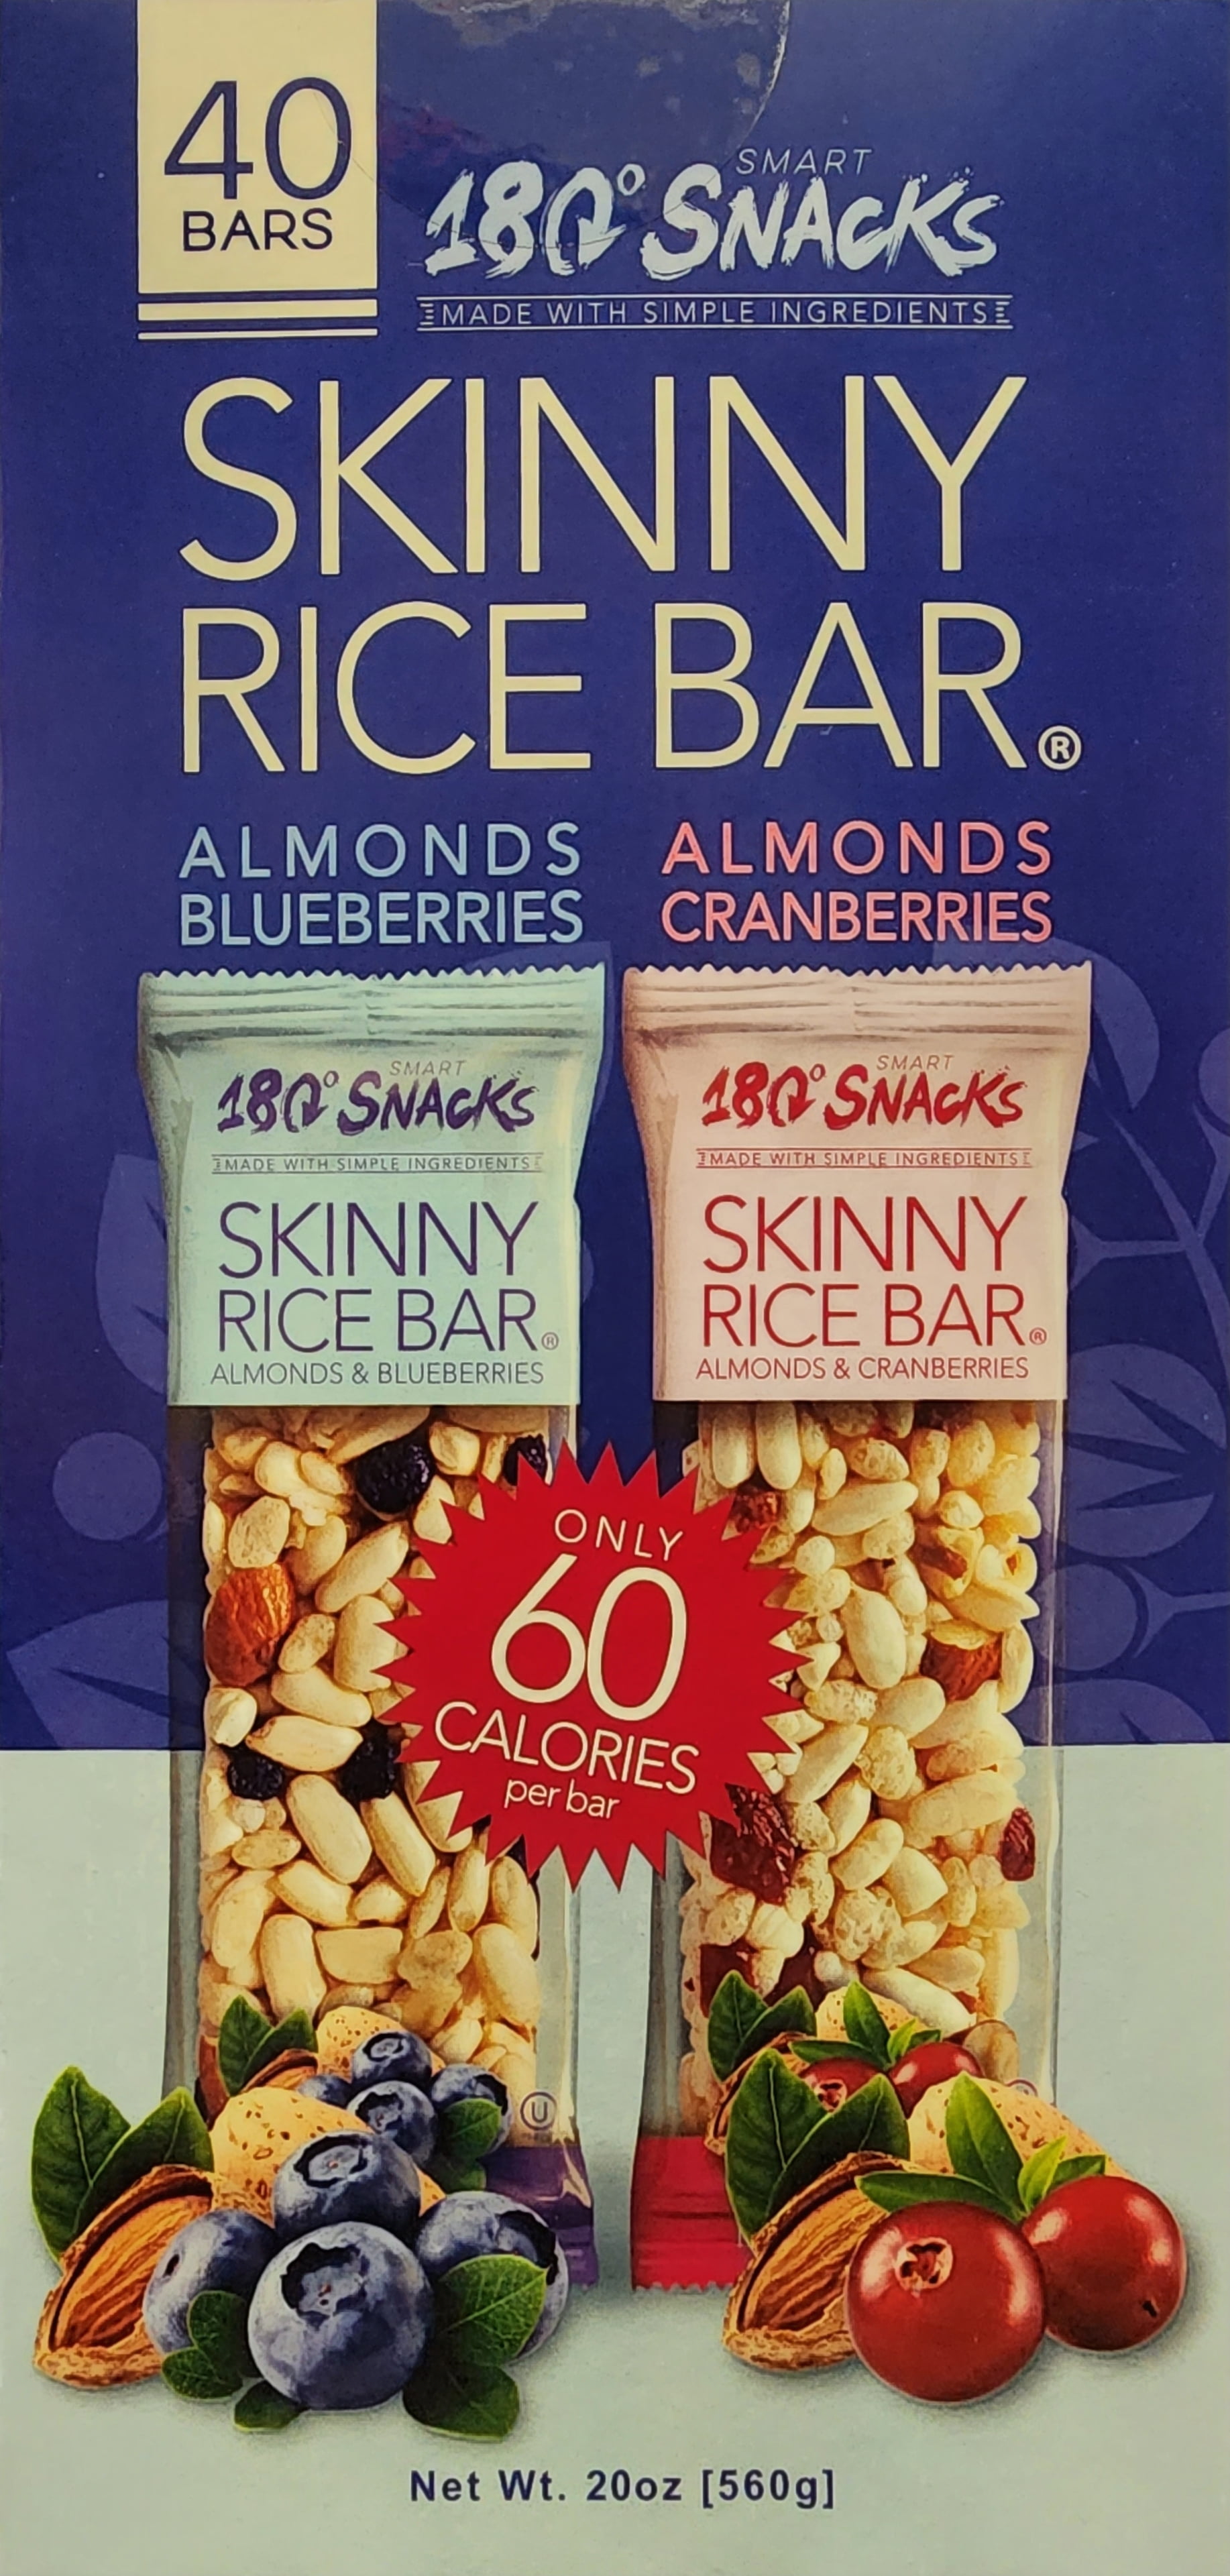 Smart 180 snacks skinny rice bars Review